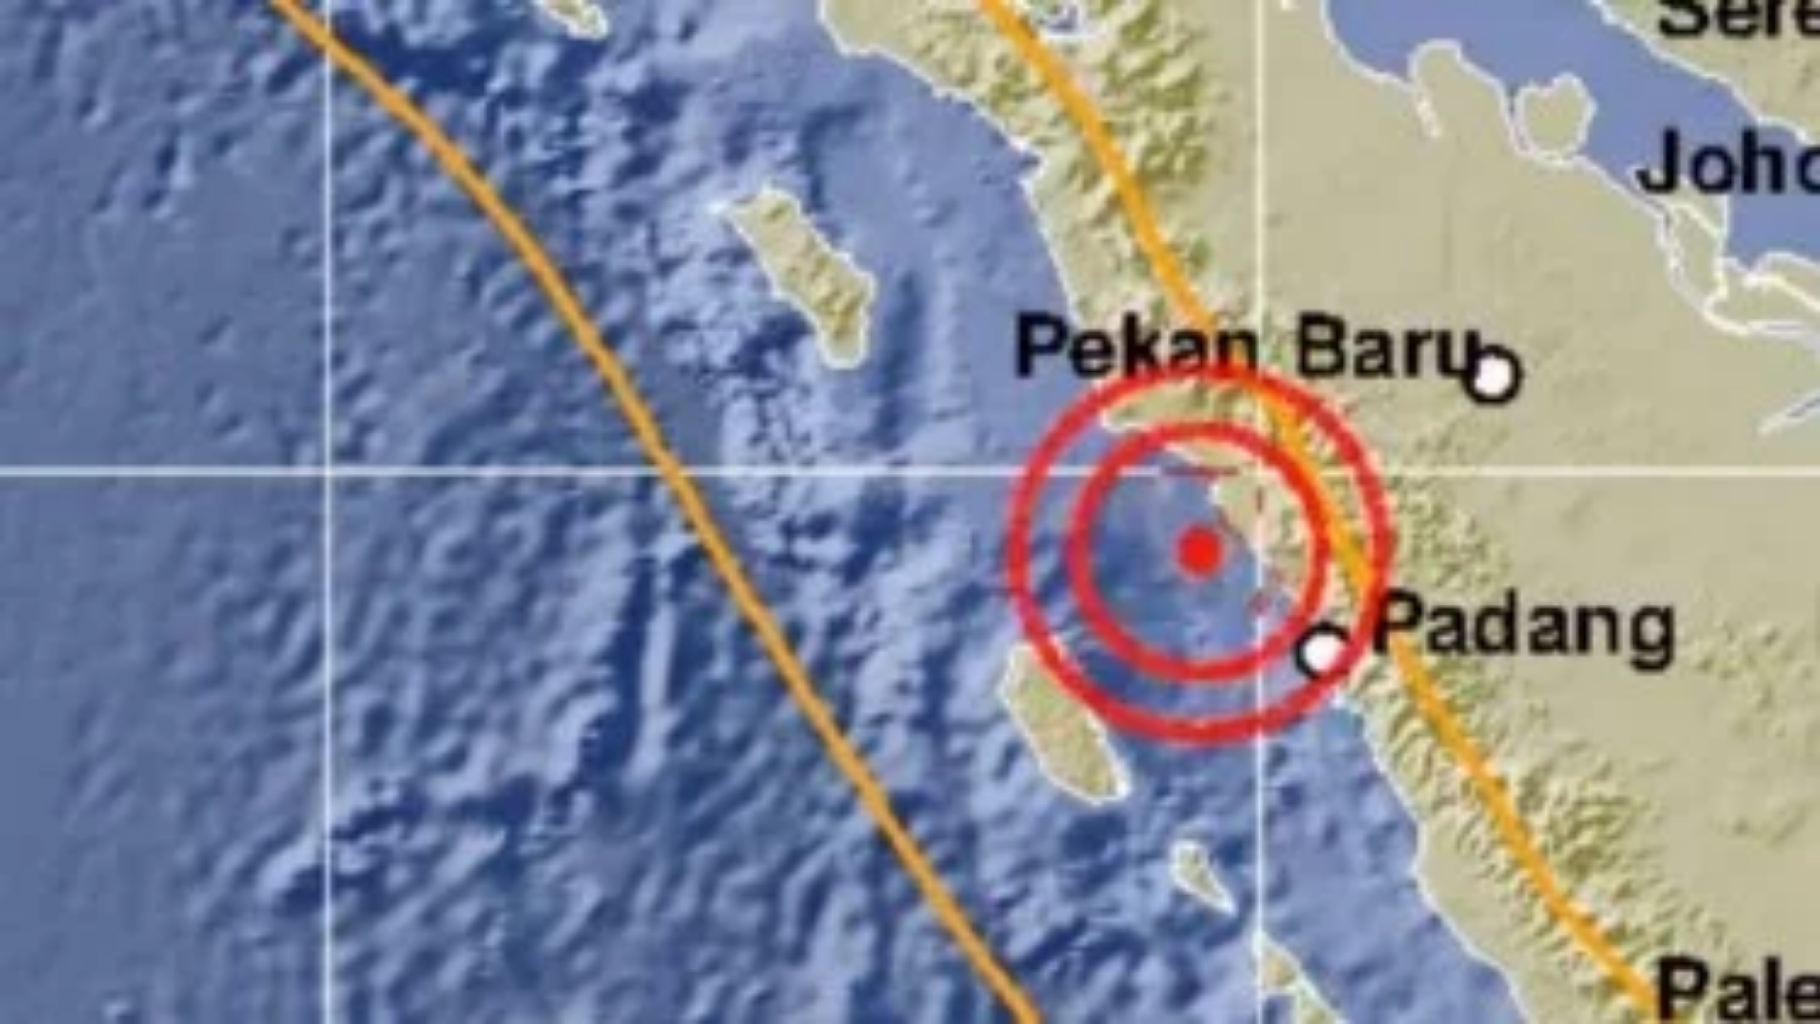 Gempa Berkekuatan 5 SR Terjadi di Padang Pariaman